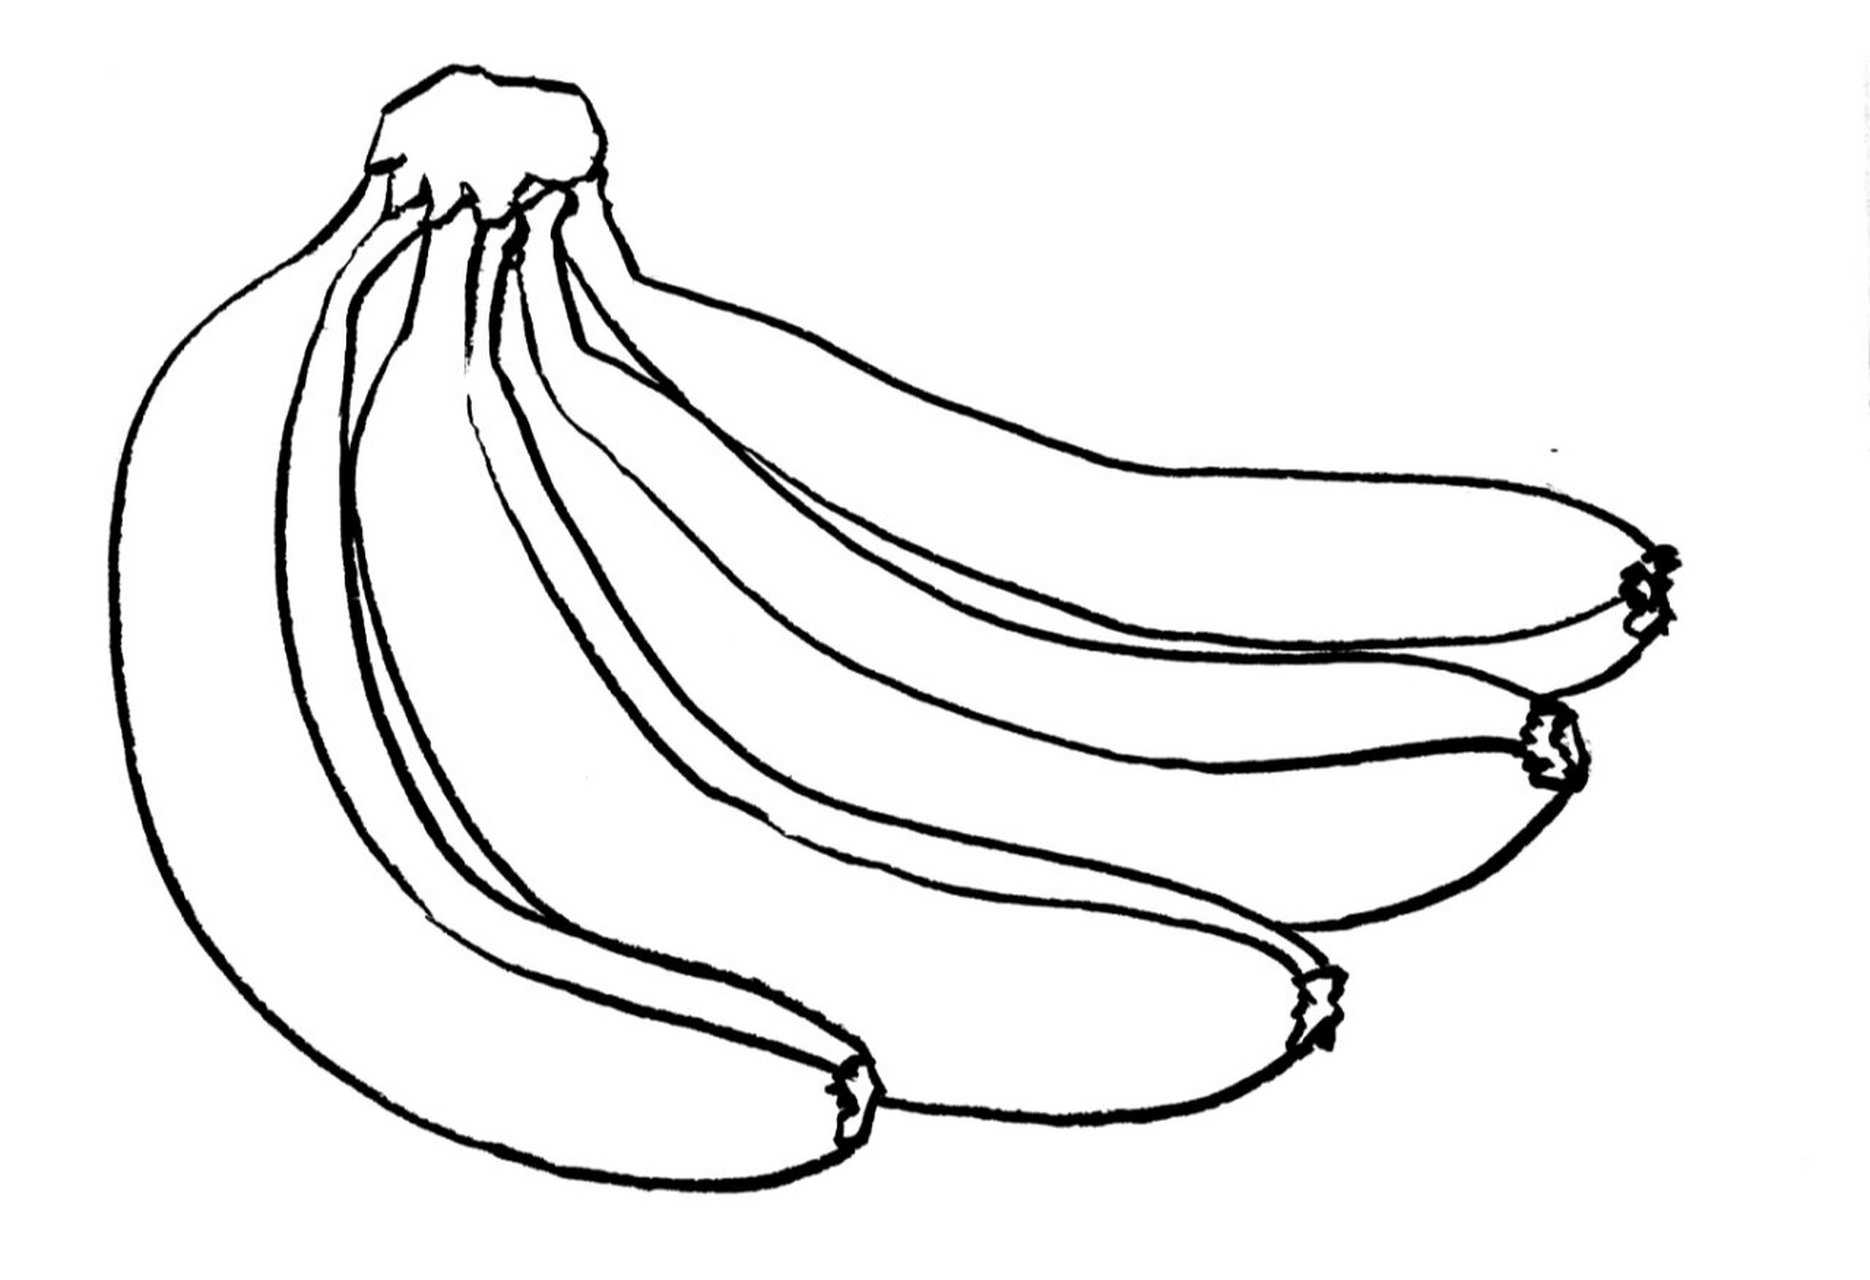 简单的水果线描画图片